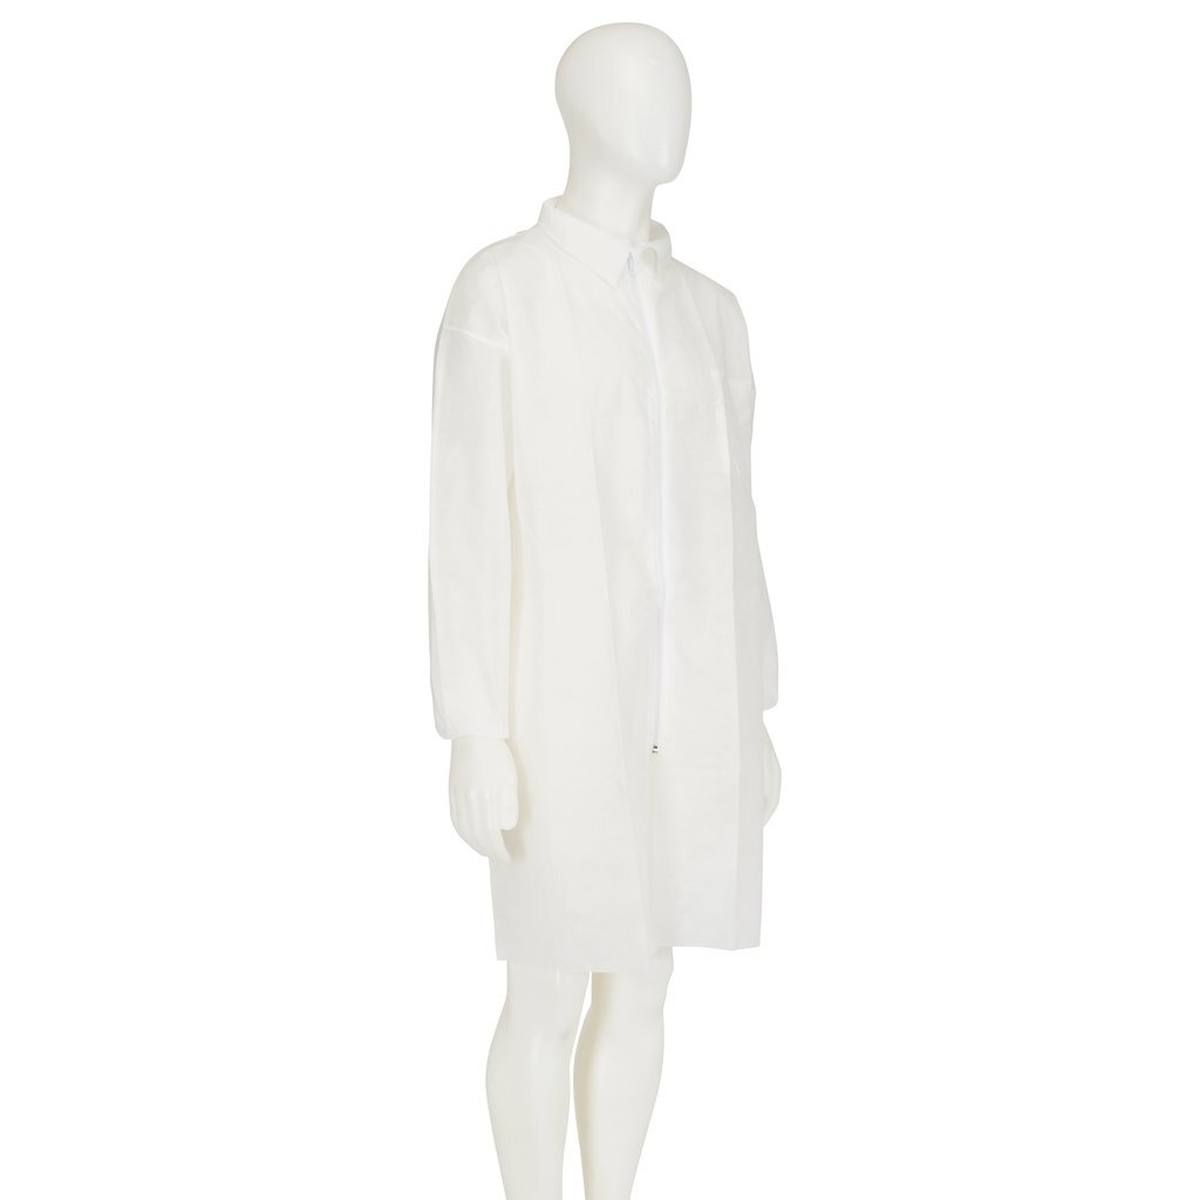 3M 4400 Manteau, blanc, taille S, matière 100% polypropylène, respirant, très léger, avec fermeture éclair